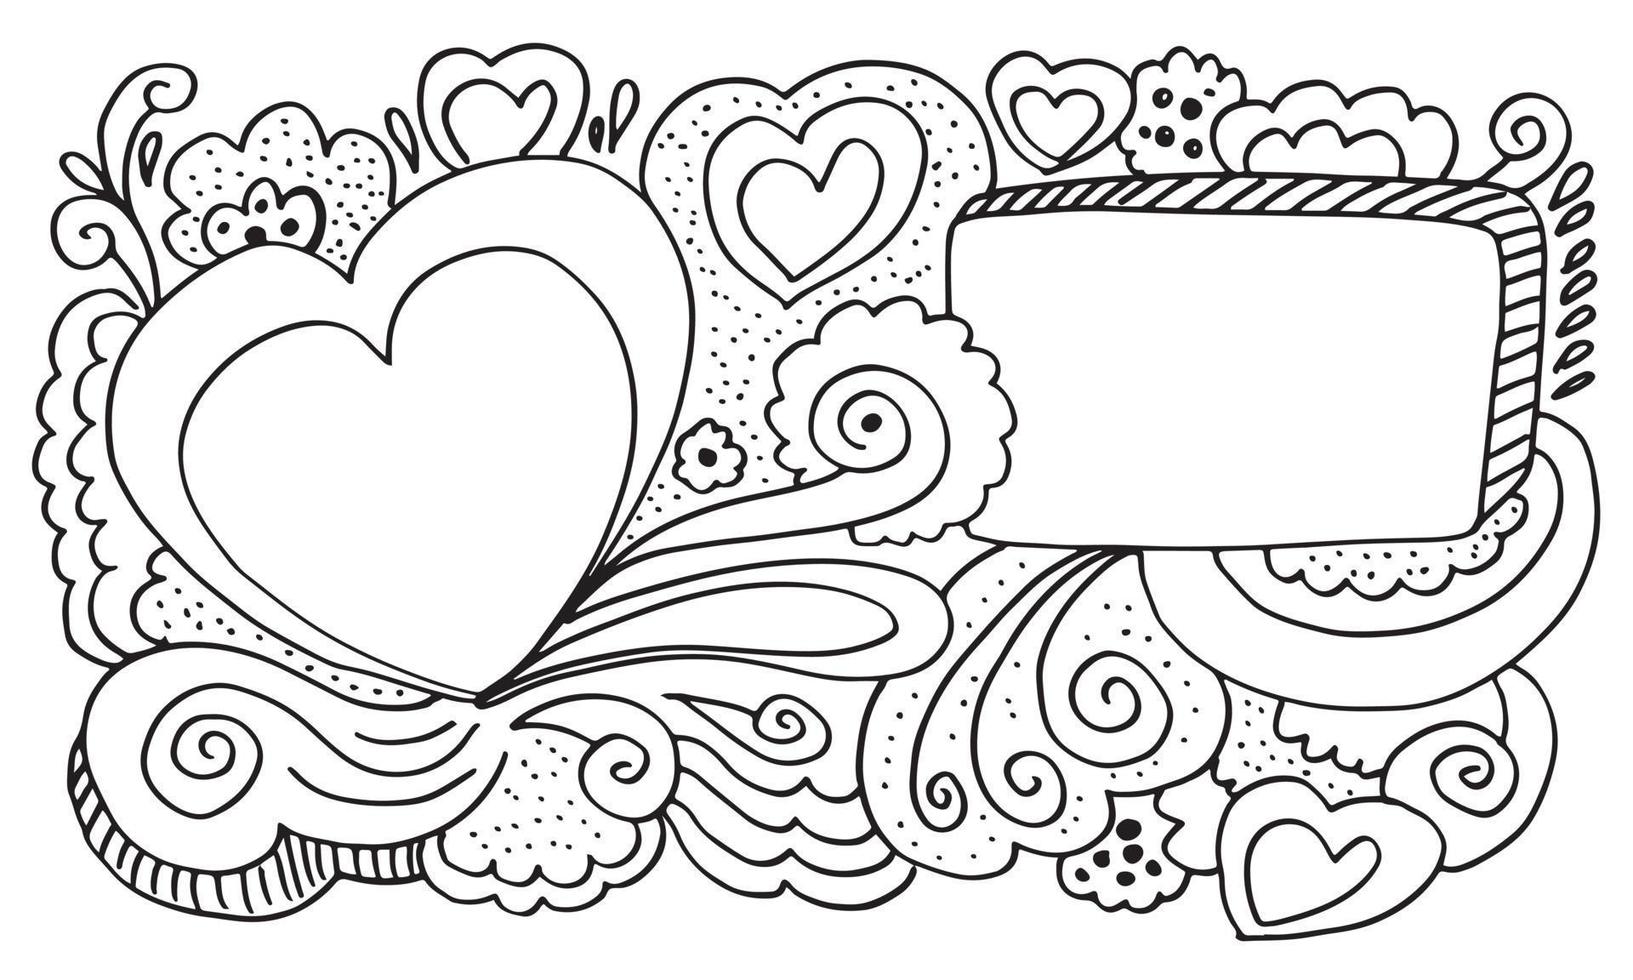 fondo vectorial con corazones y marco de garabatos. boda, tarjeta del día de san valentín en estilo dibujado a mano.ilustración vectorial.eps 10. vector